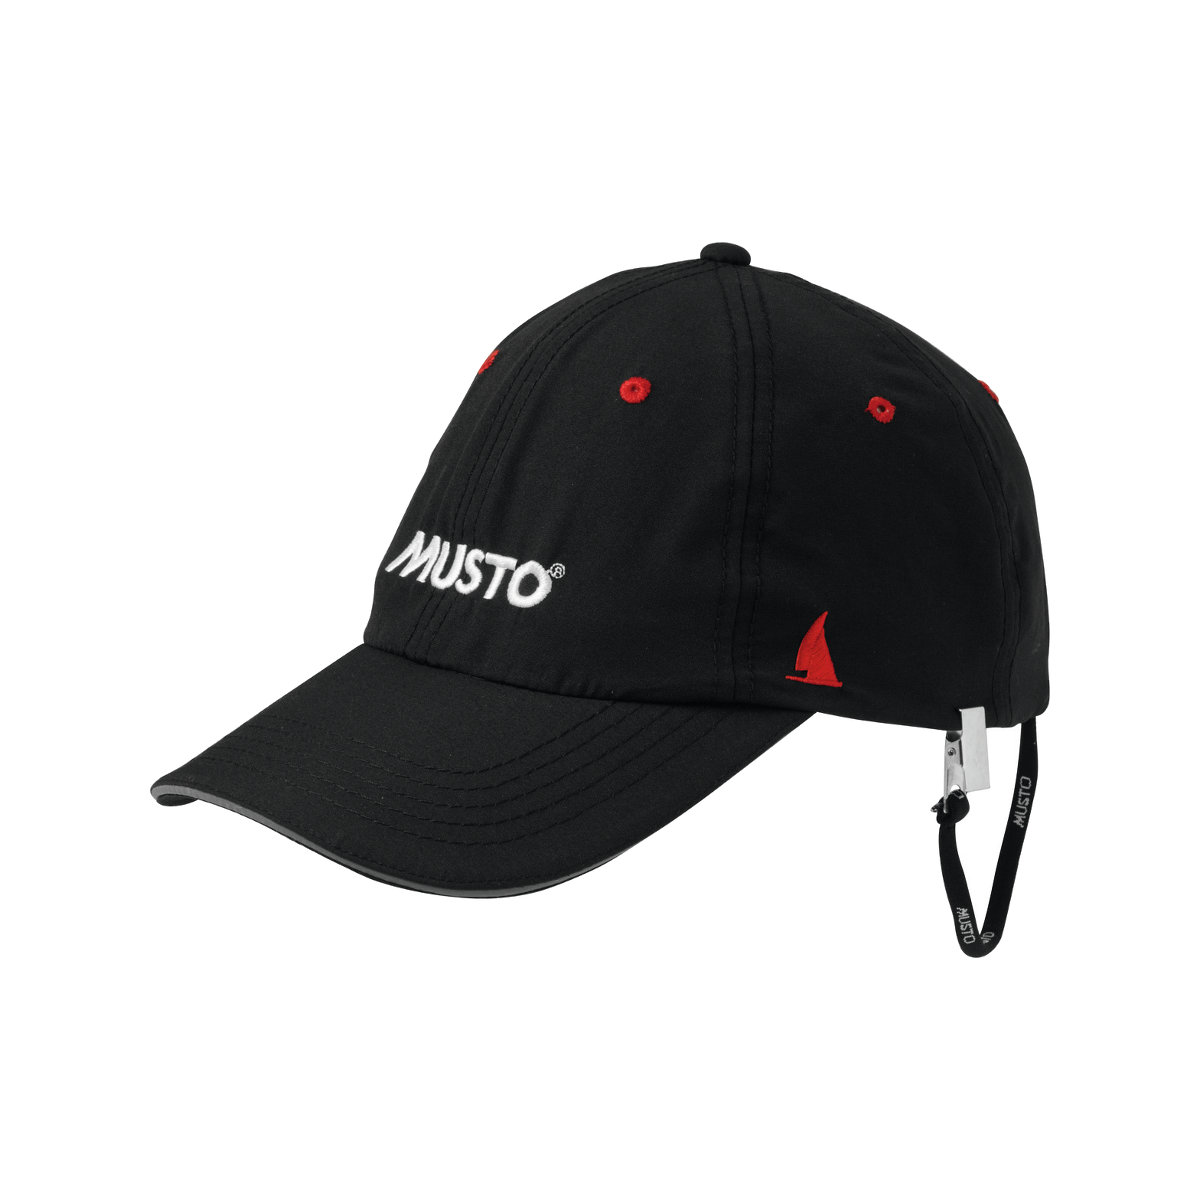 Musto Evo Fast Dry casquette voile noire